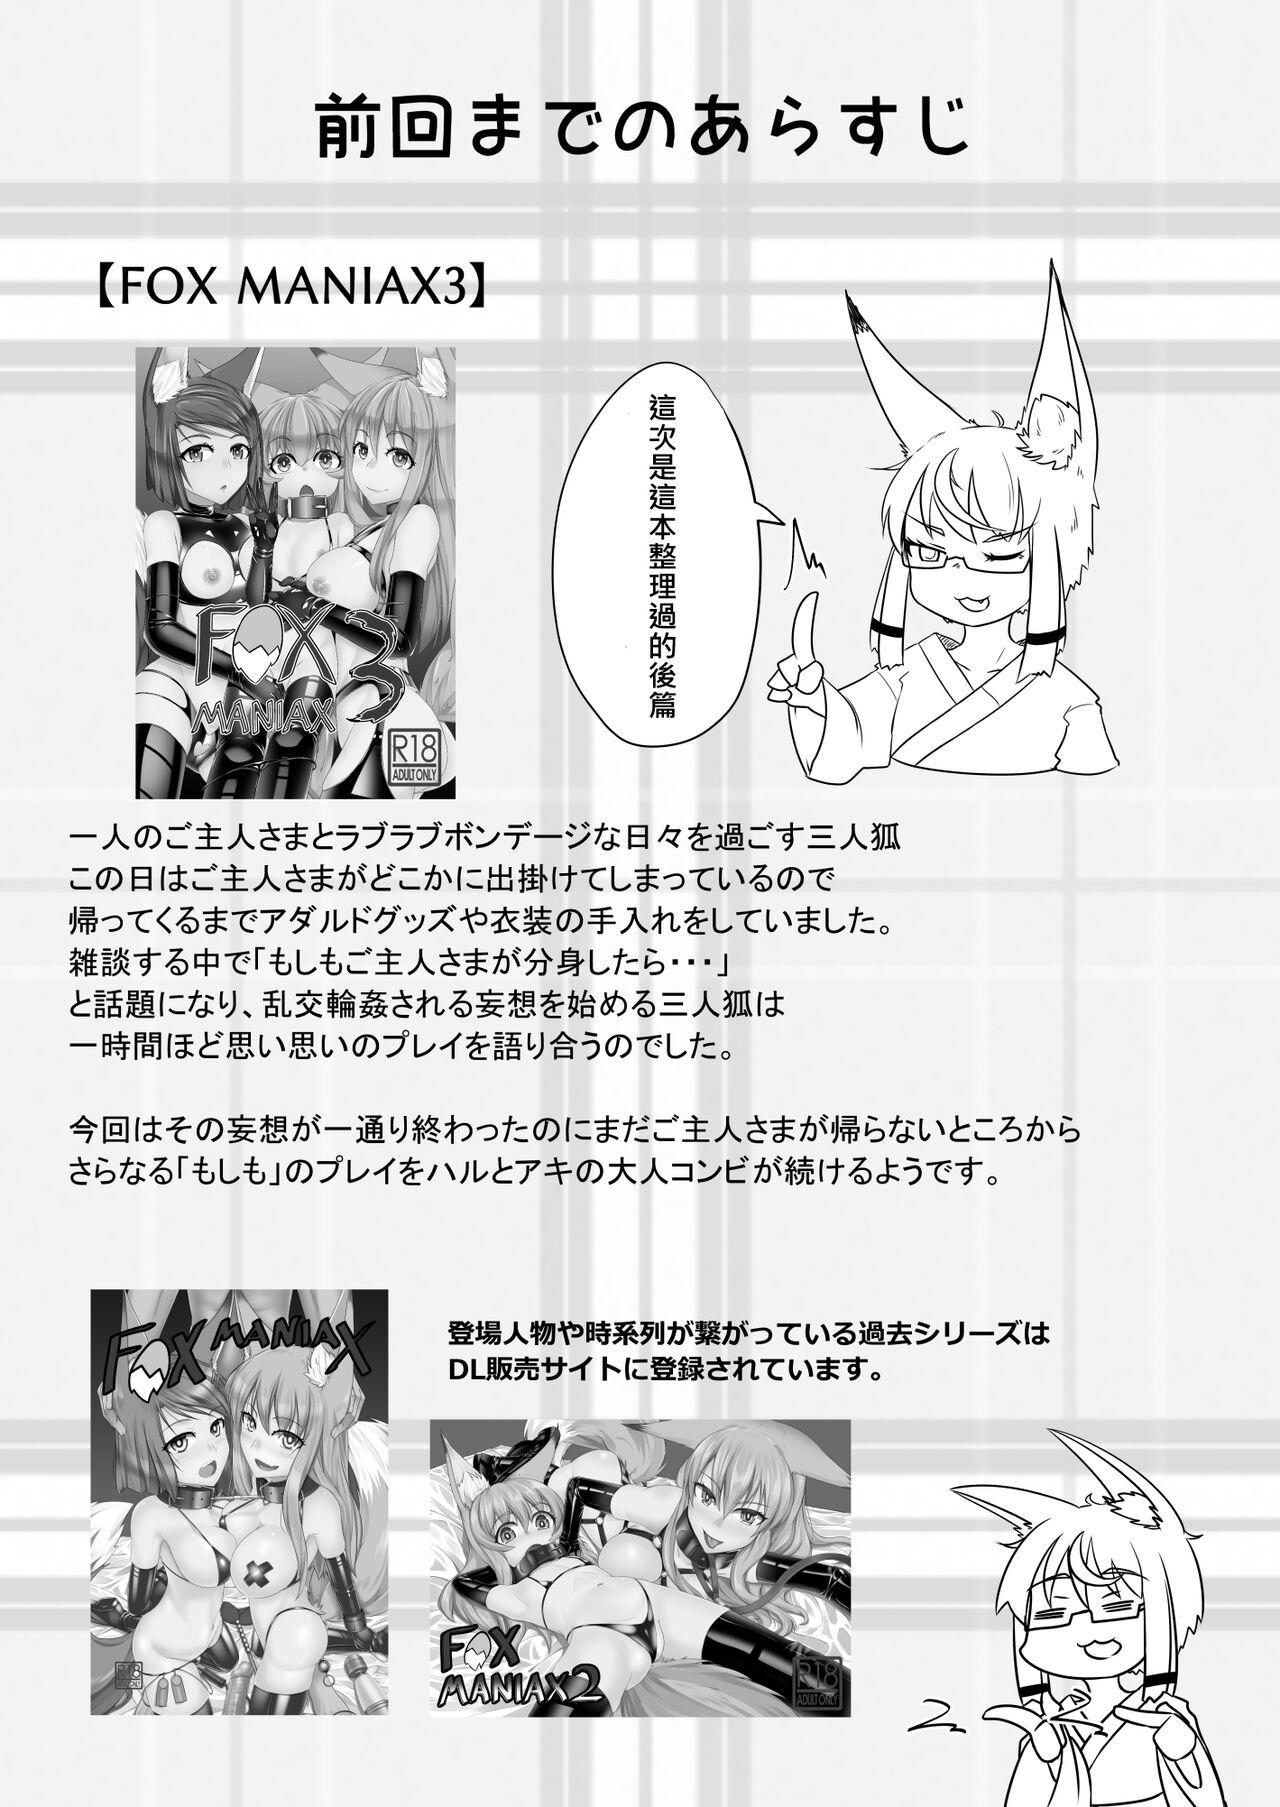 FOX MANIAX4 2